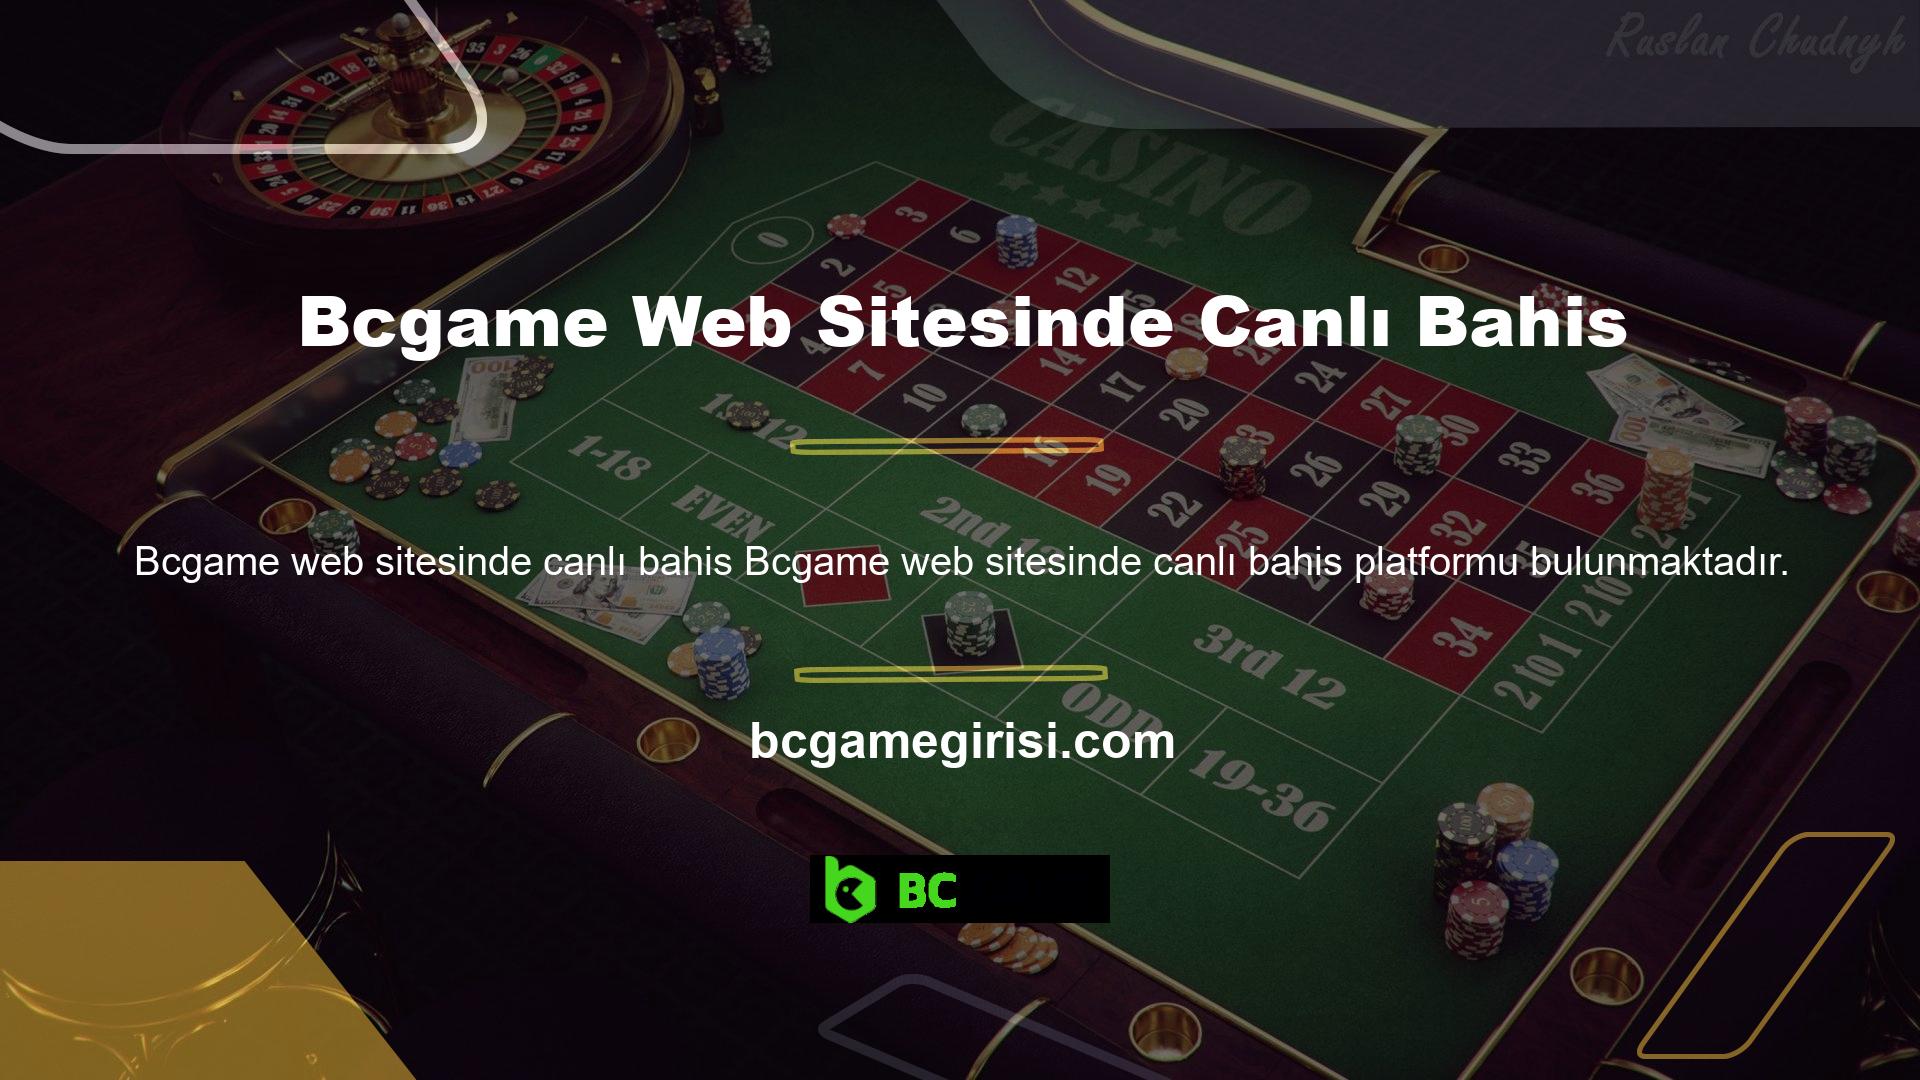 Bcgame, canlı bahis platformunda yüksek kalitede bahis sunmakta olup, Türkiye’de üst düzey canlı bahis sunan sitelerden biridir